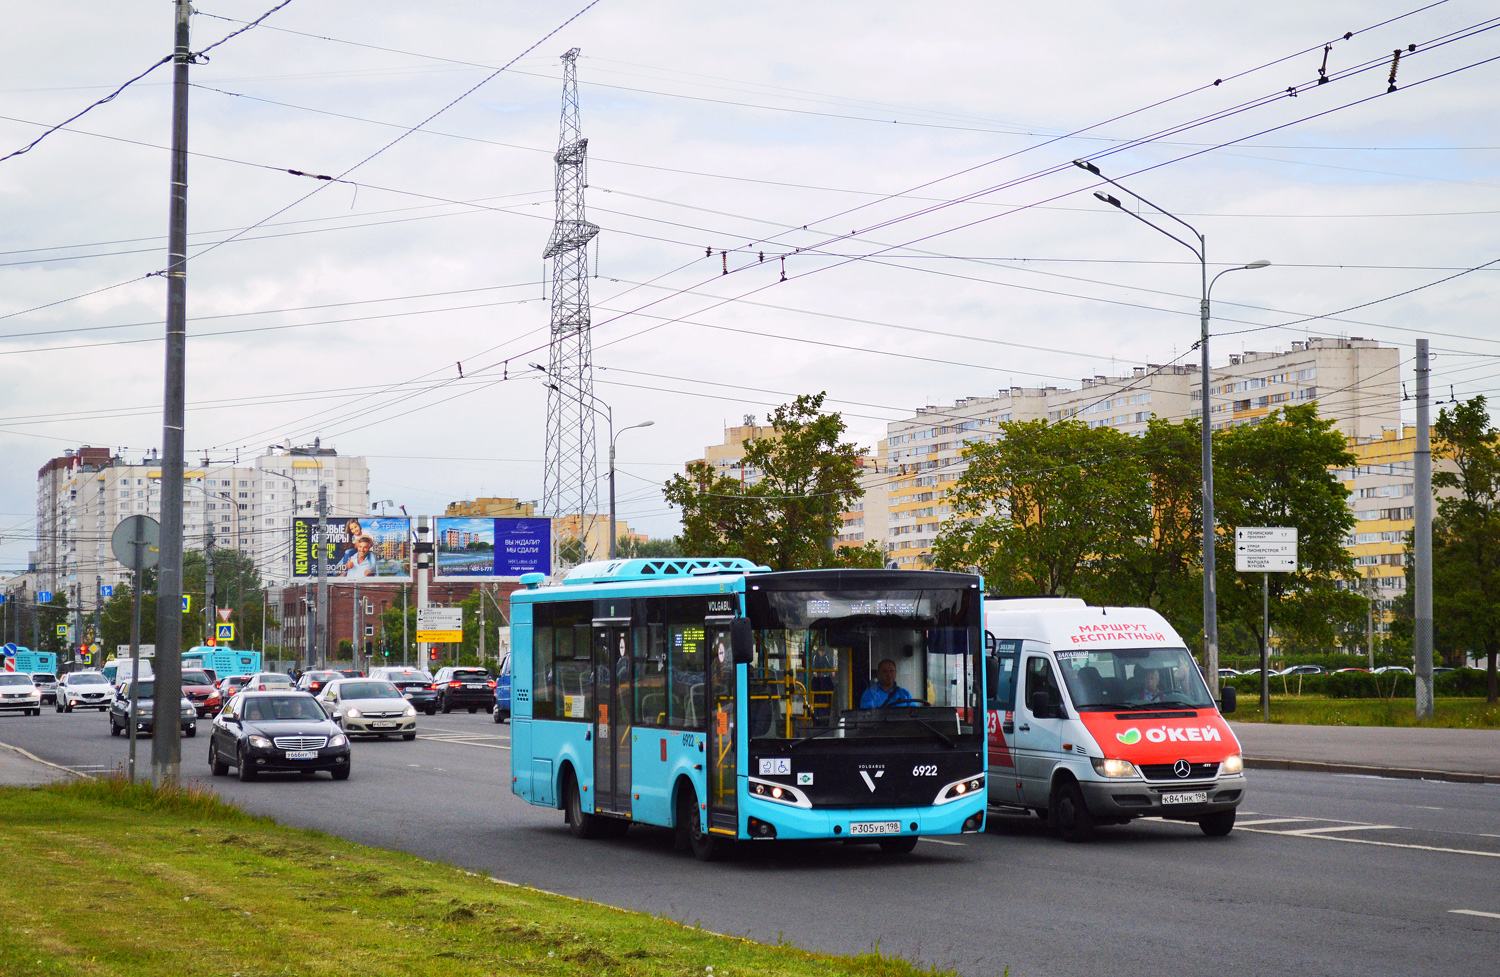 Sanktpēterburga, Volgabus-4298.G4 (LNG) № 6922